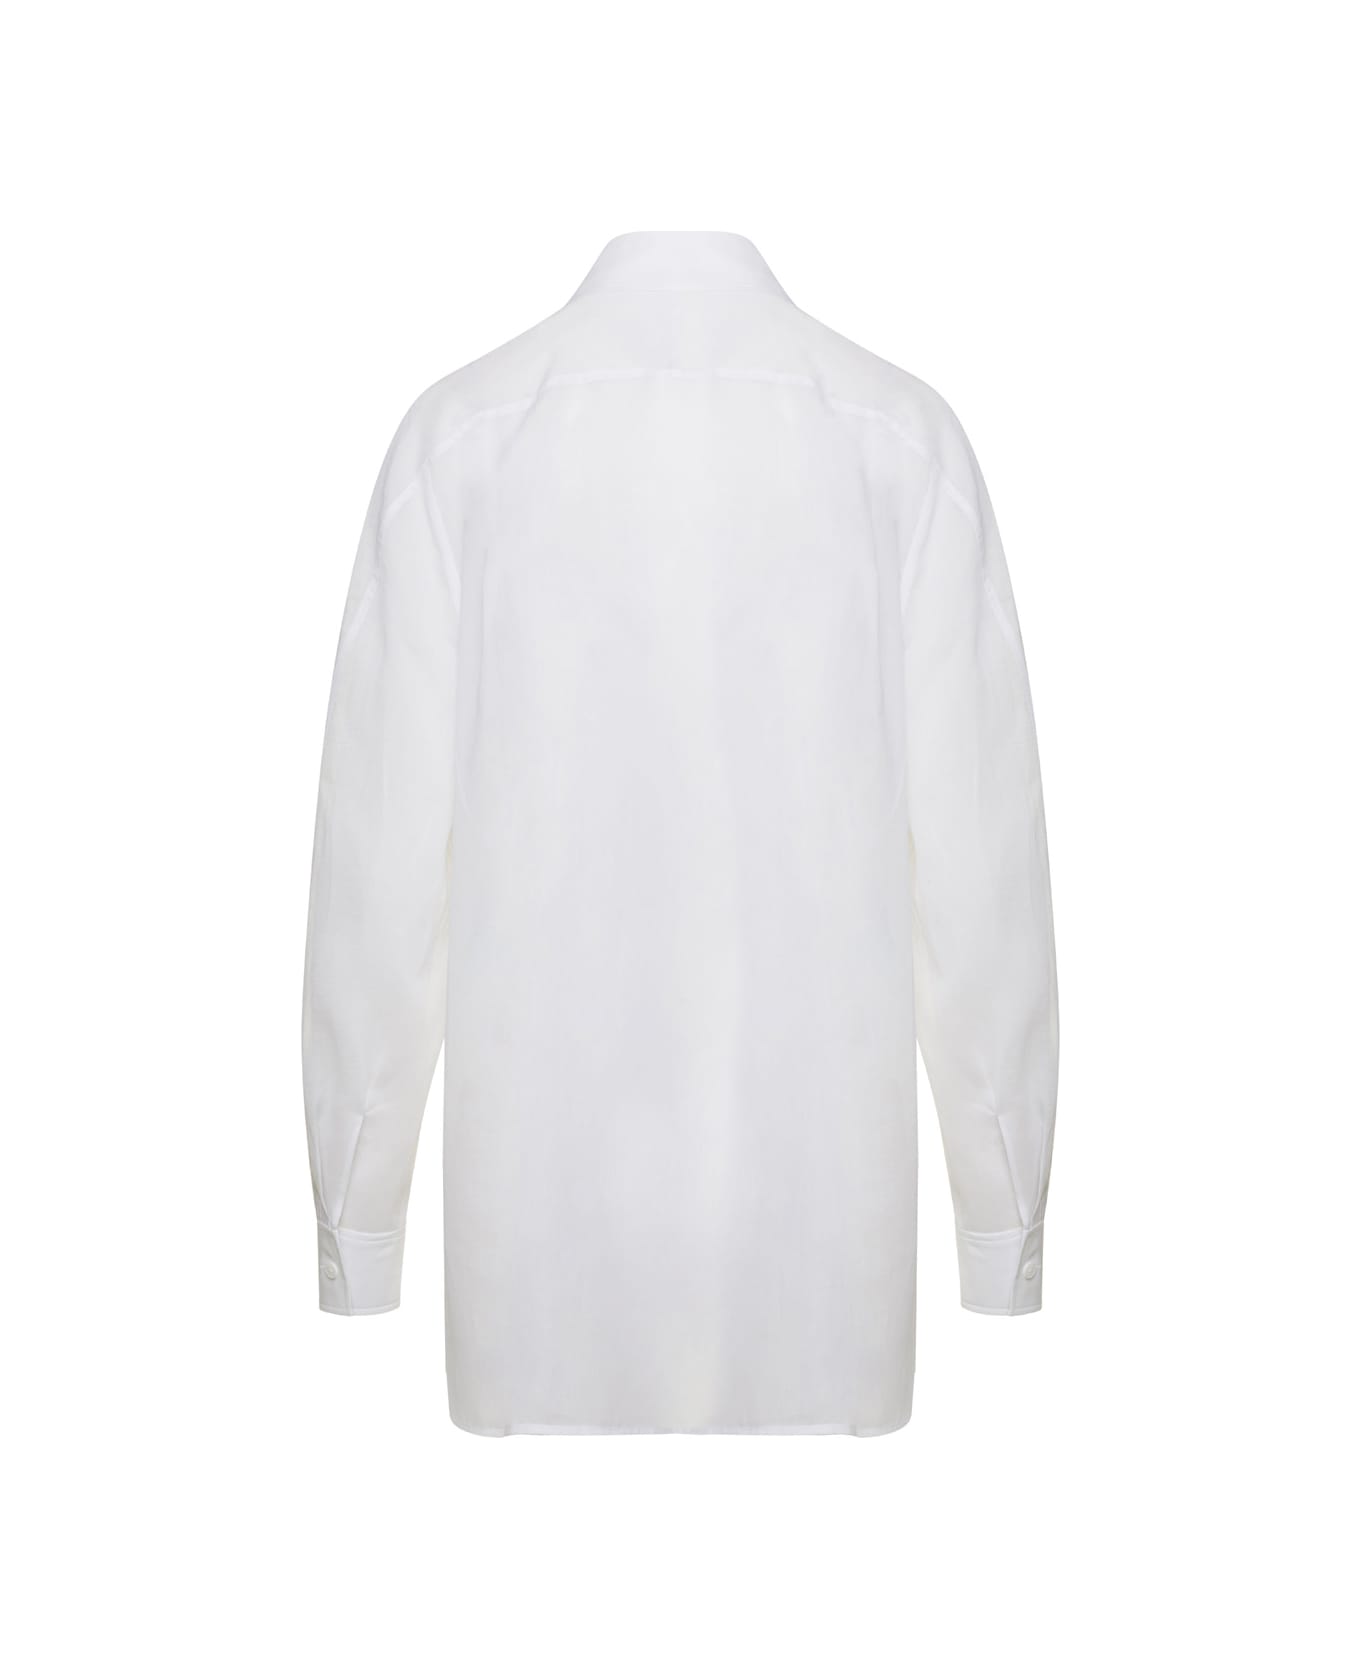 Alberta Ferretti White Maxi Shirt In Cotton Organza Woman - White シャツ